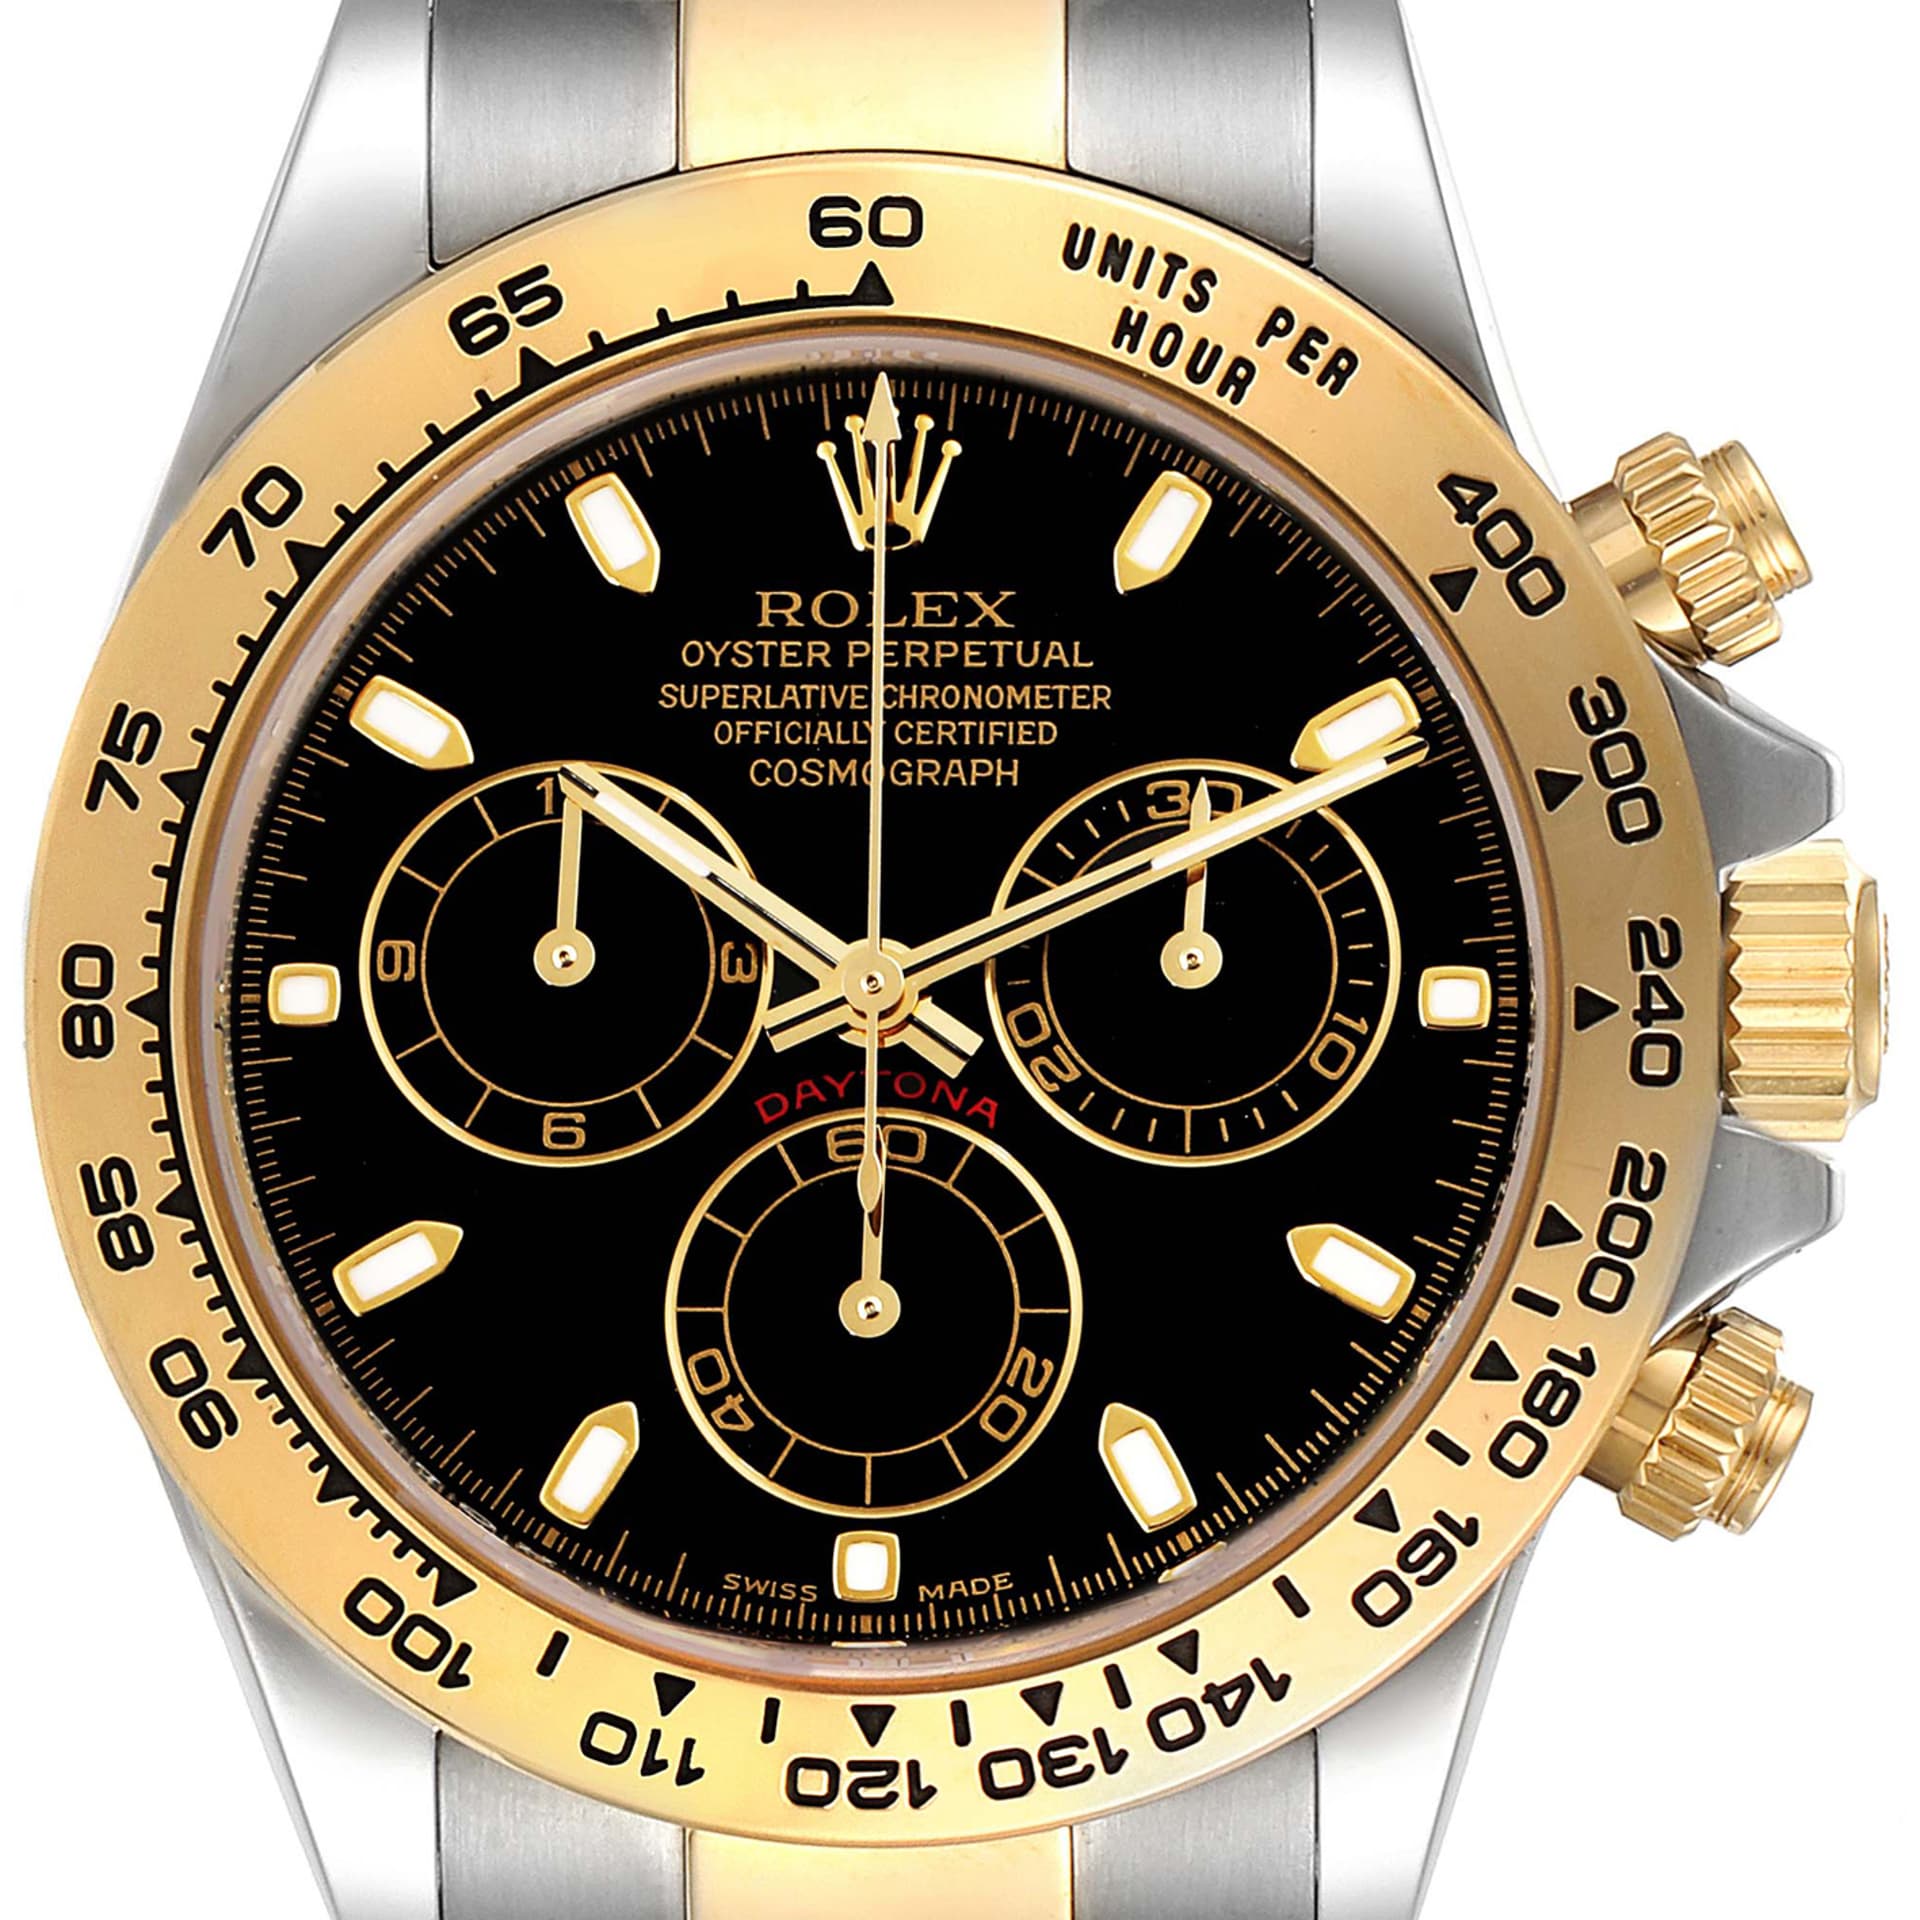 Nedostatkové hodinky jako Rolex Cosmograph Daytona ve zlatém provedení lze prodat za dvojnásobnou cenu, než je ta oficiální.